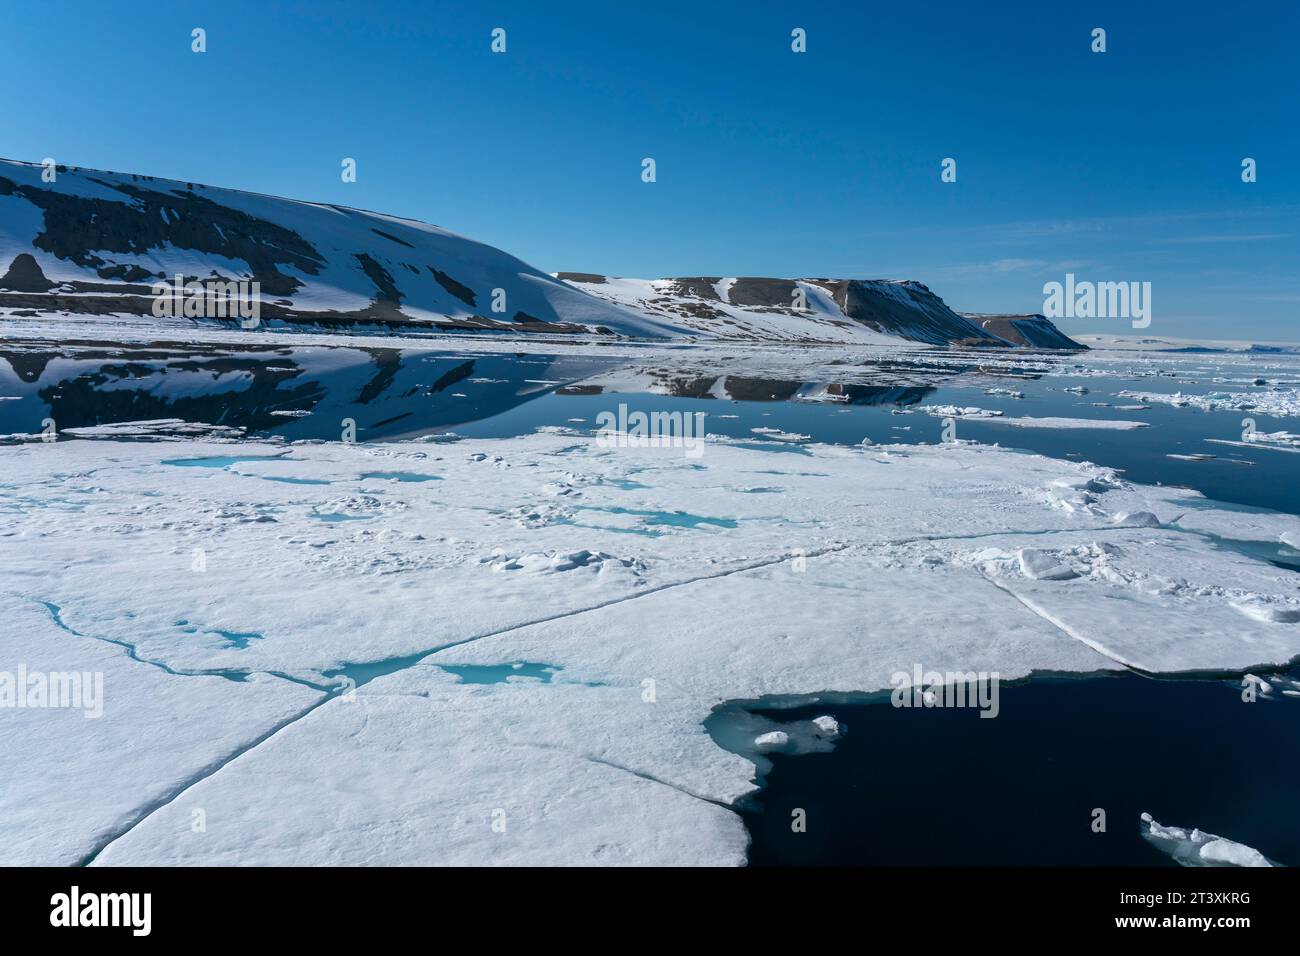 Meereis in Nordausladet, Svalbard Inseln, Norwegen. Stockfoto